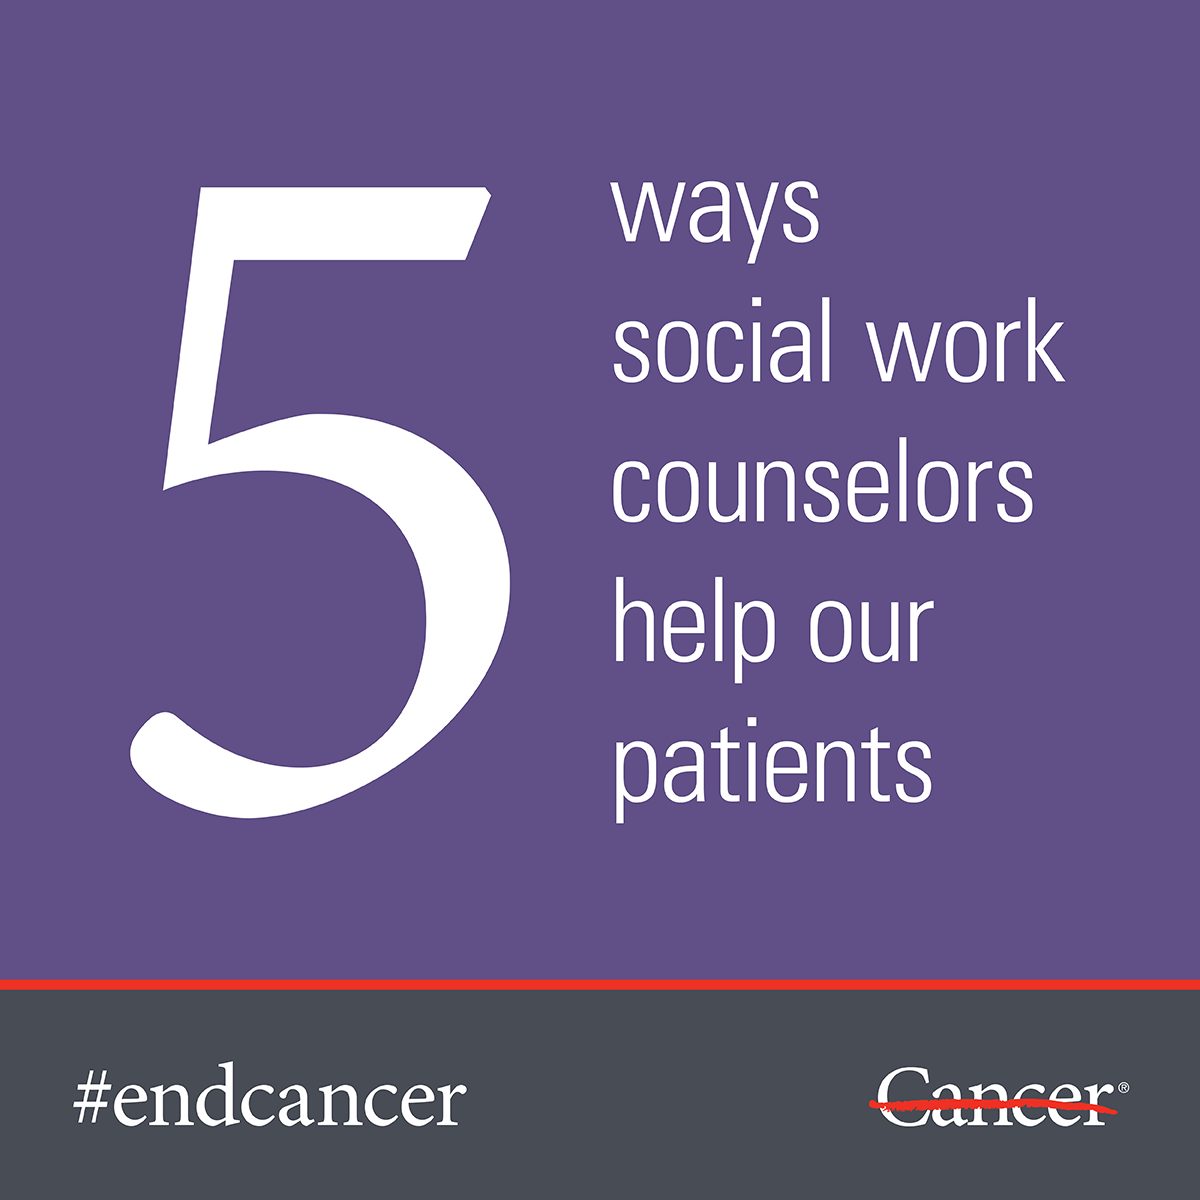 了解MD安德森社会工作顾问在癌症治疗过程中是如何帮助你的。